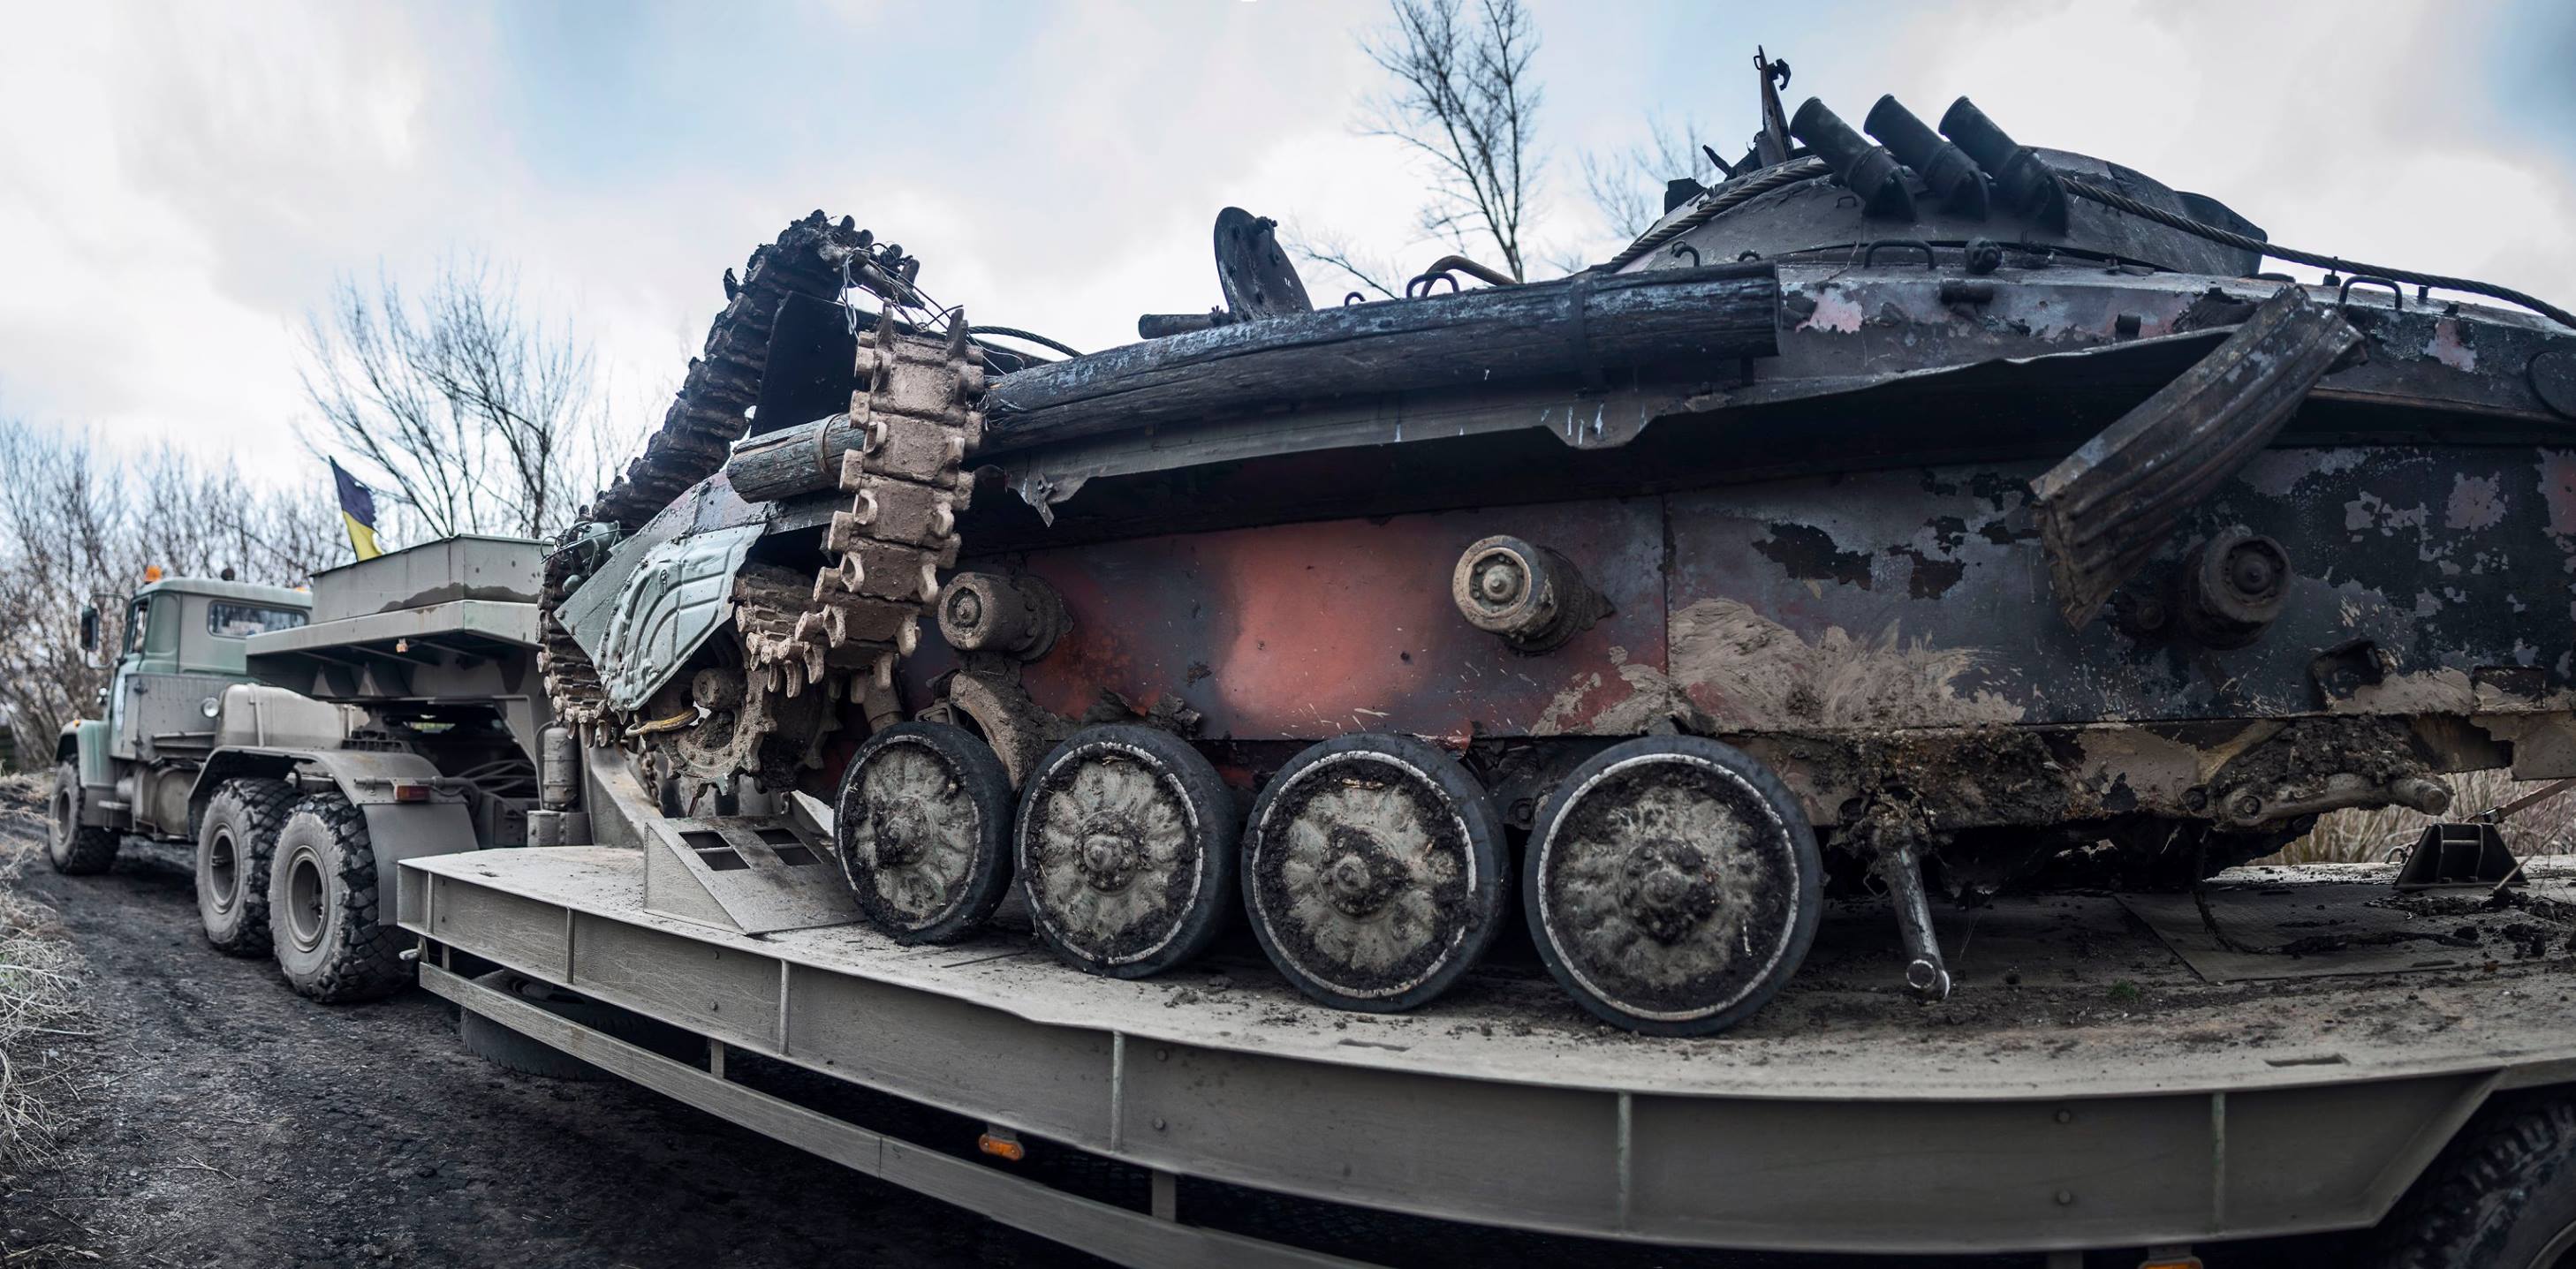 Опубликованы кадры покалеченной боевой машины, в которой подорвался на мине и погиб боец ВСУ Сергей Валах